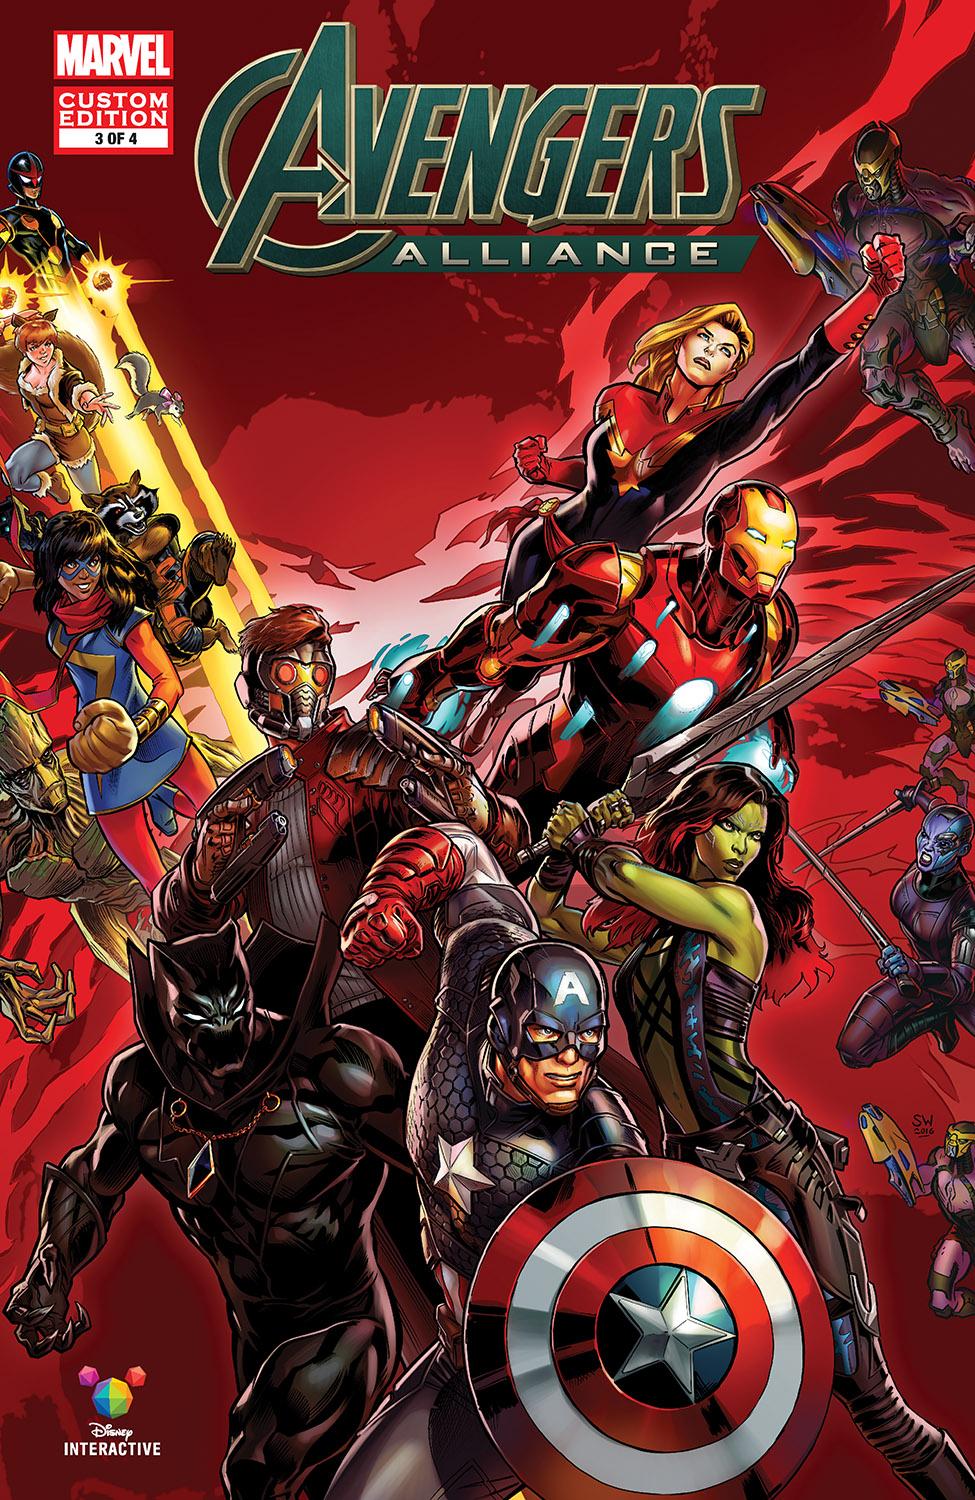 Marvel: Avengers Alliance Vol. 1 #3